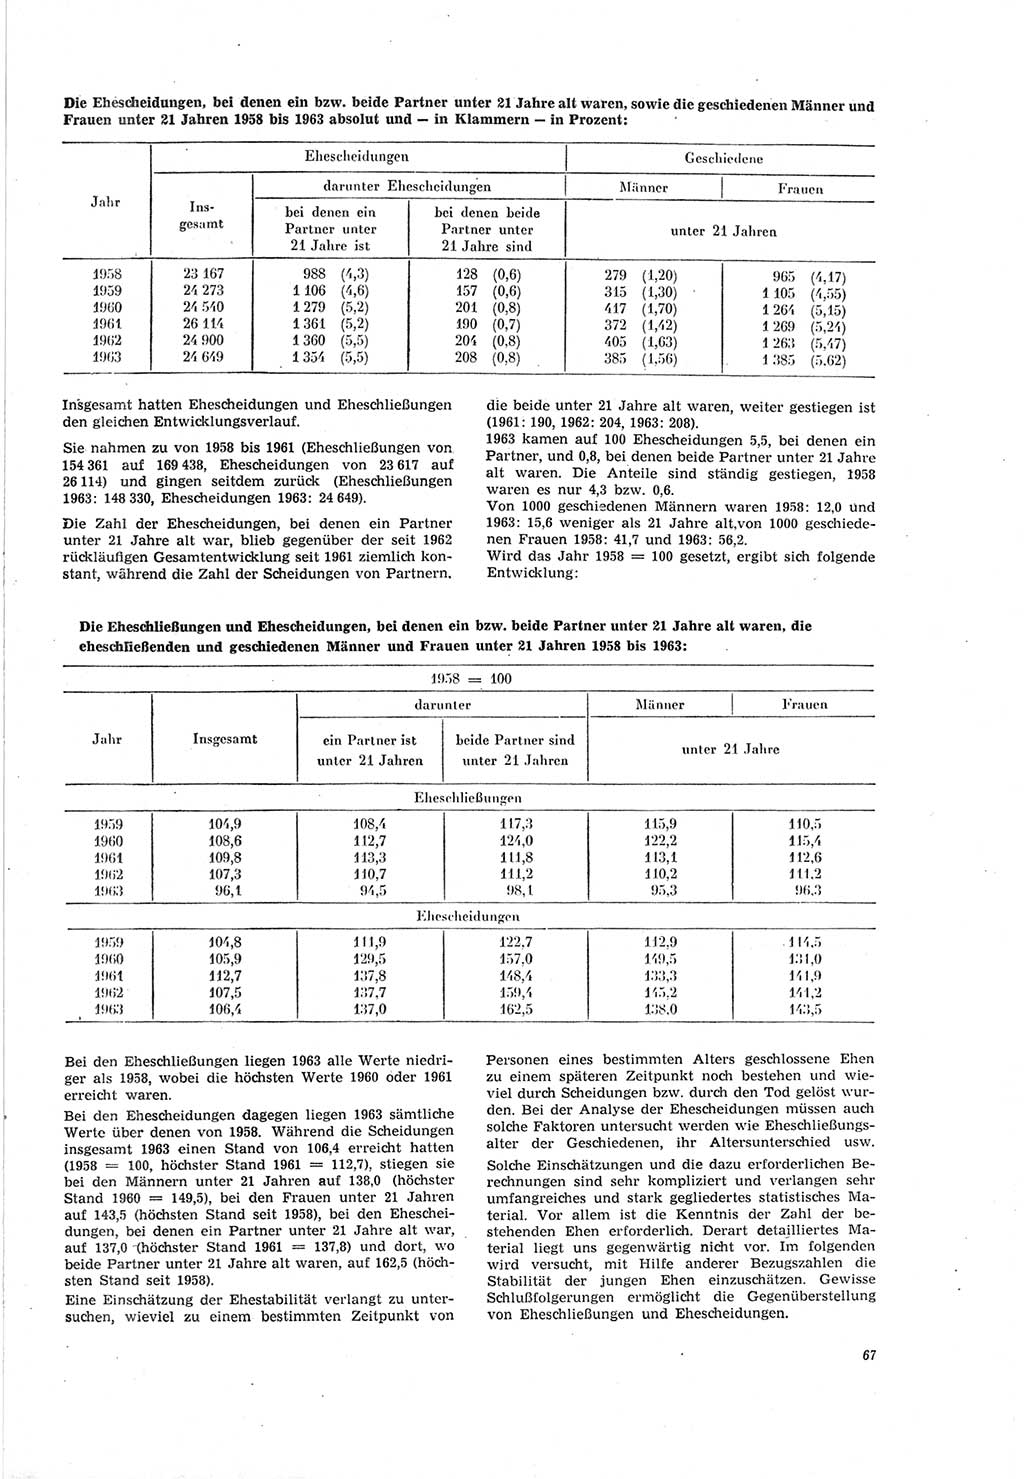 Neue Justiz (NJ), Zeitschrift für Recht und Rechtswissenschaft [Deutsche Demokratische Republik (DDR)], 19. Jahrgang 1965, Seite 67 (NJ DDR 1965, S. 67)